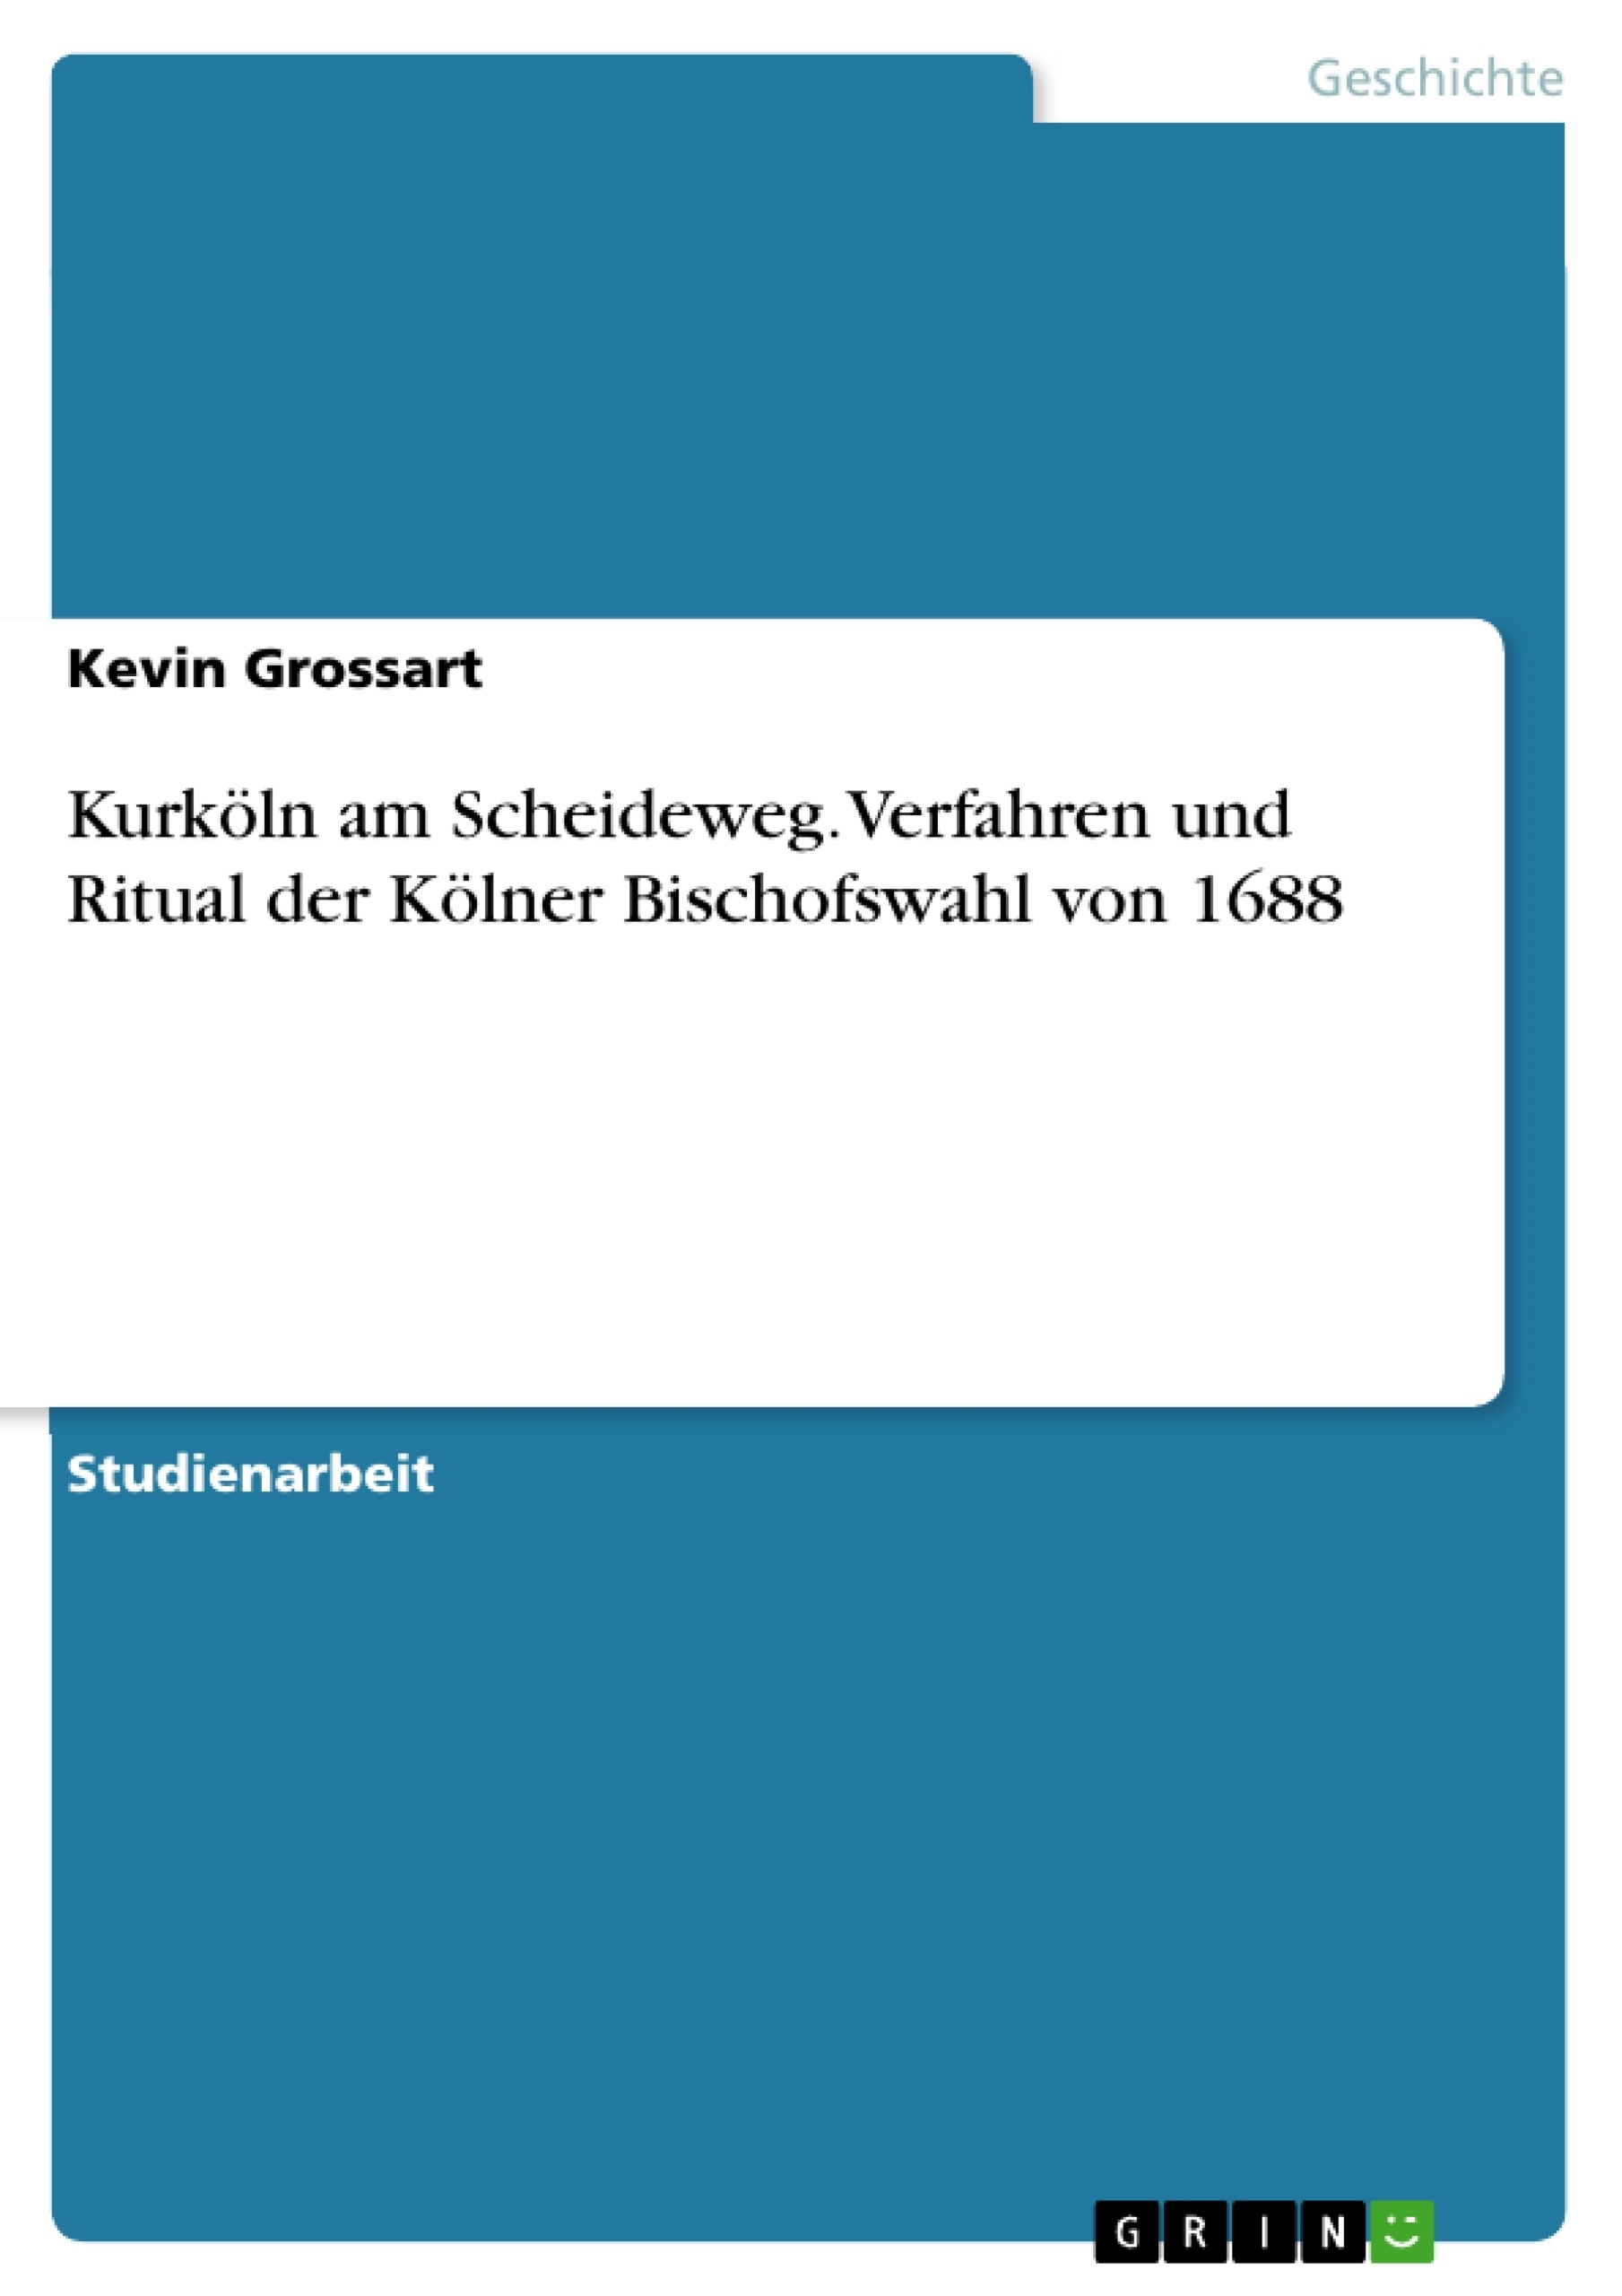 Title: Kurköln am Scheideweg. Verfahren und Ritual der Kölner Bischofswahl von 1688